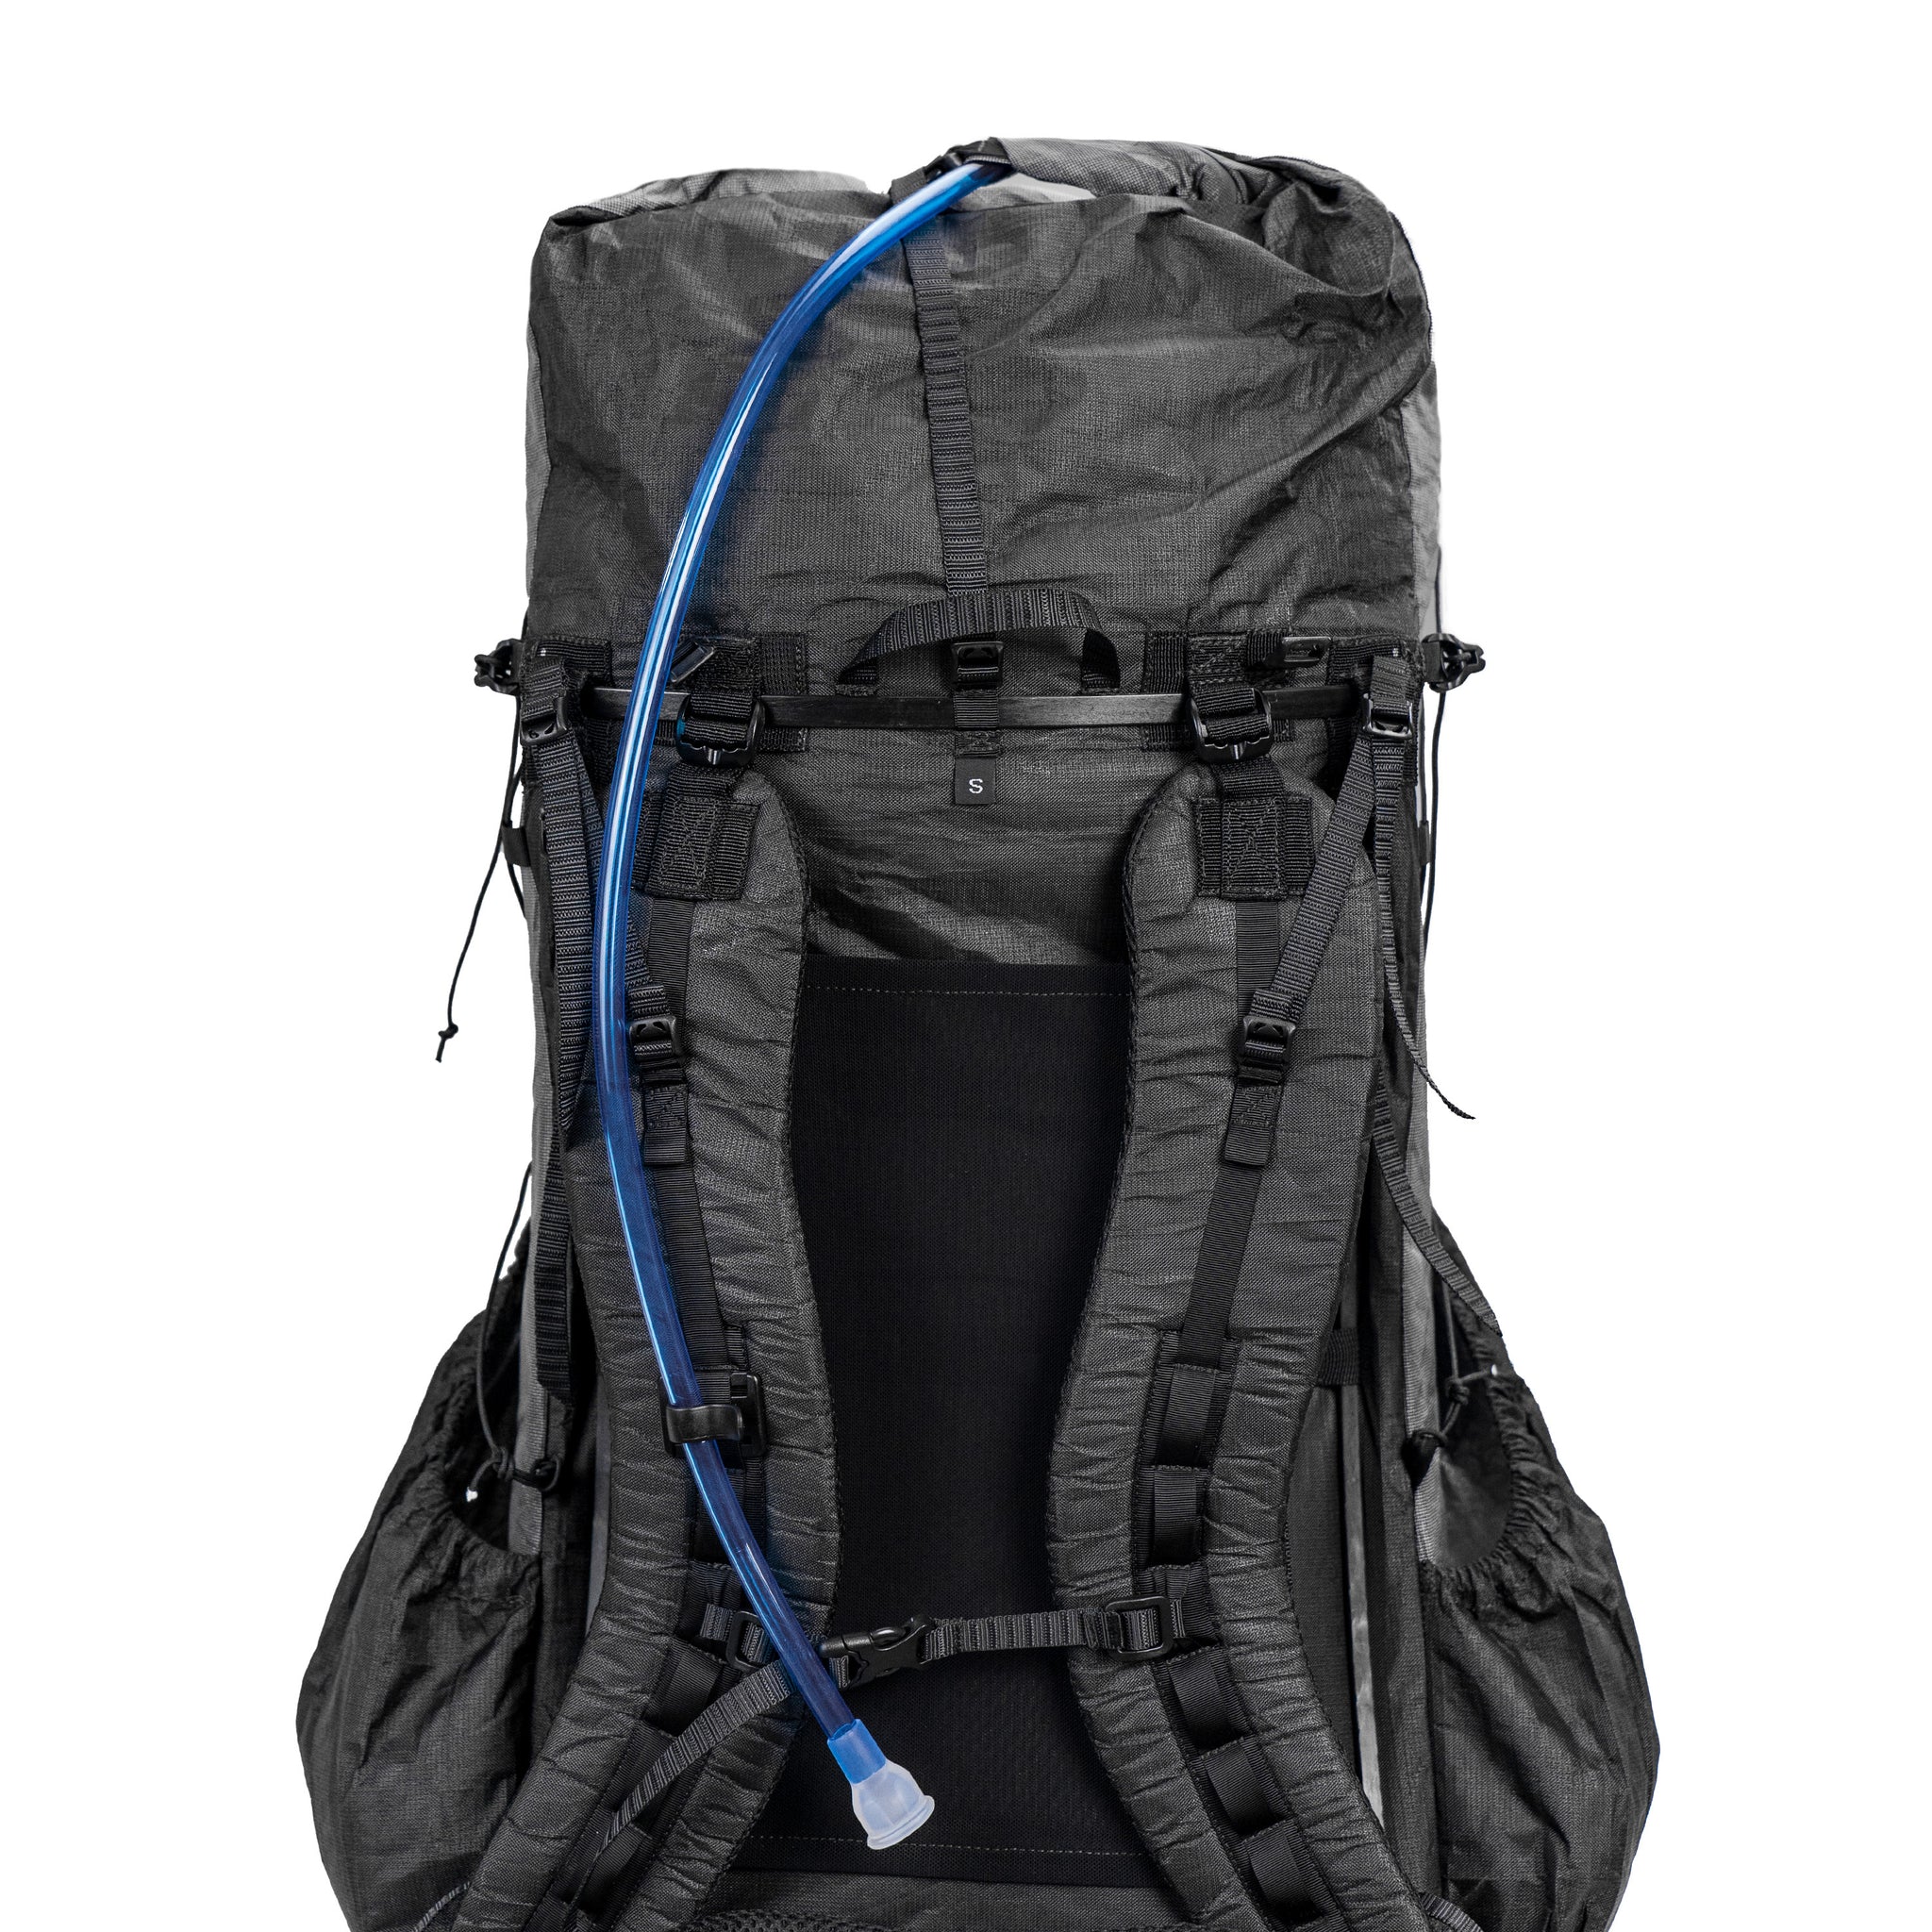 Arc Haul Ultra 60L - UL Hiking Backpack